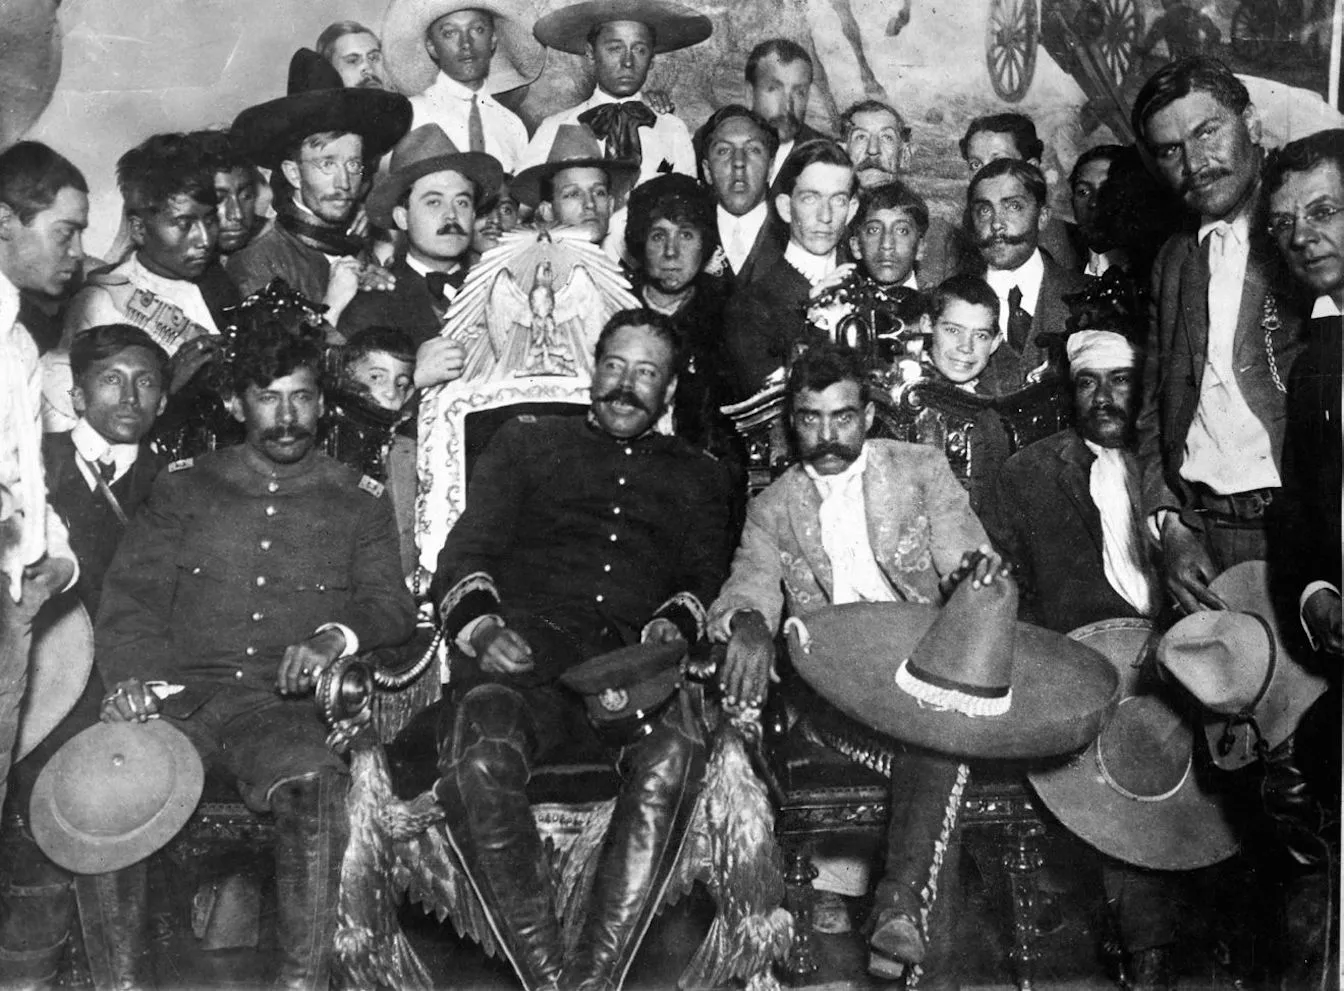 Tot i que els unien els ideals revolucionaris, Pancho Villa i Zapata (tots dos al centre de la imatge) recelaven l’un de l’altre